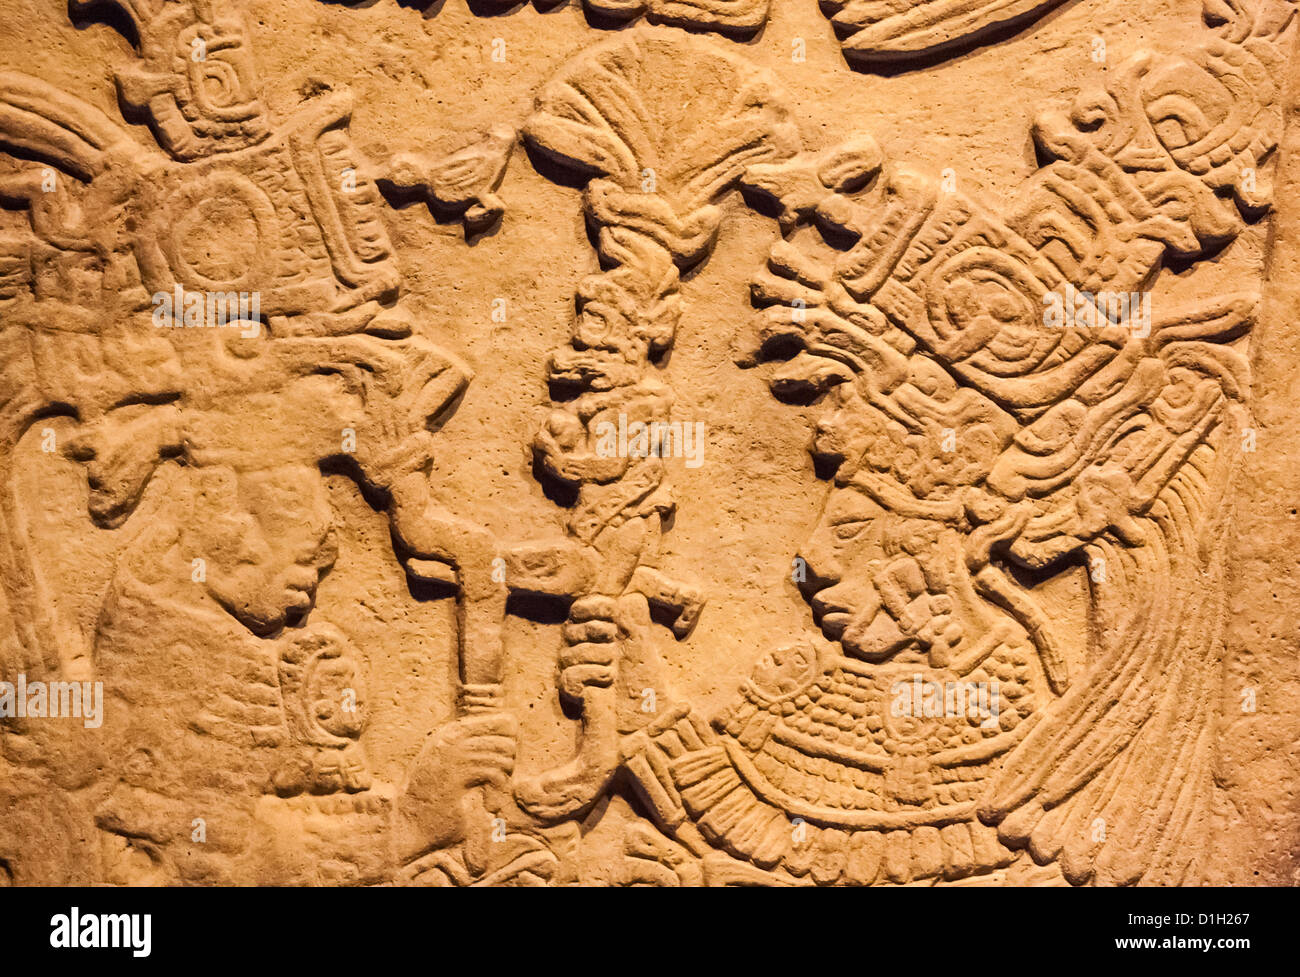 Maya-Skulptur aus dem Süden von Mexiko, gebaut von der Maya Kultur Hunderte Jahre vor. Stockfoto